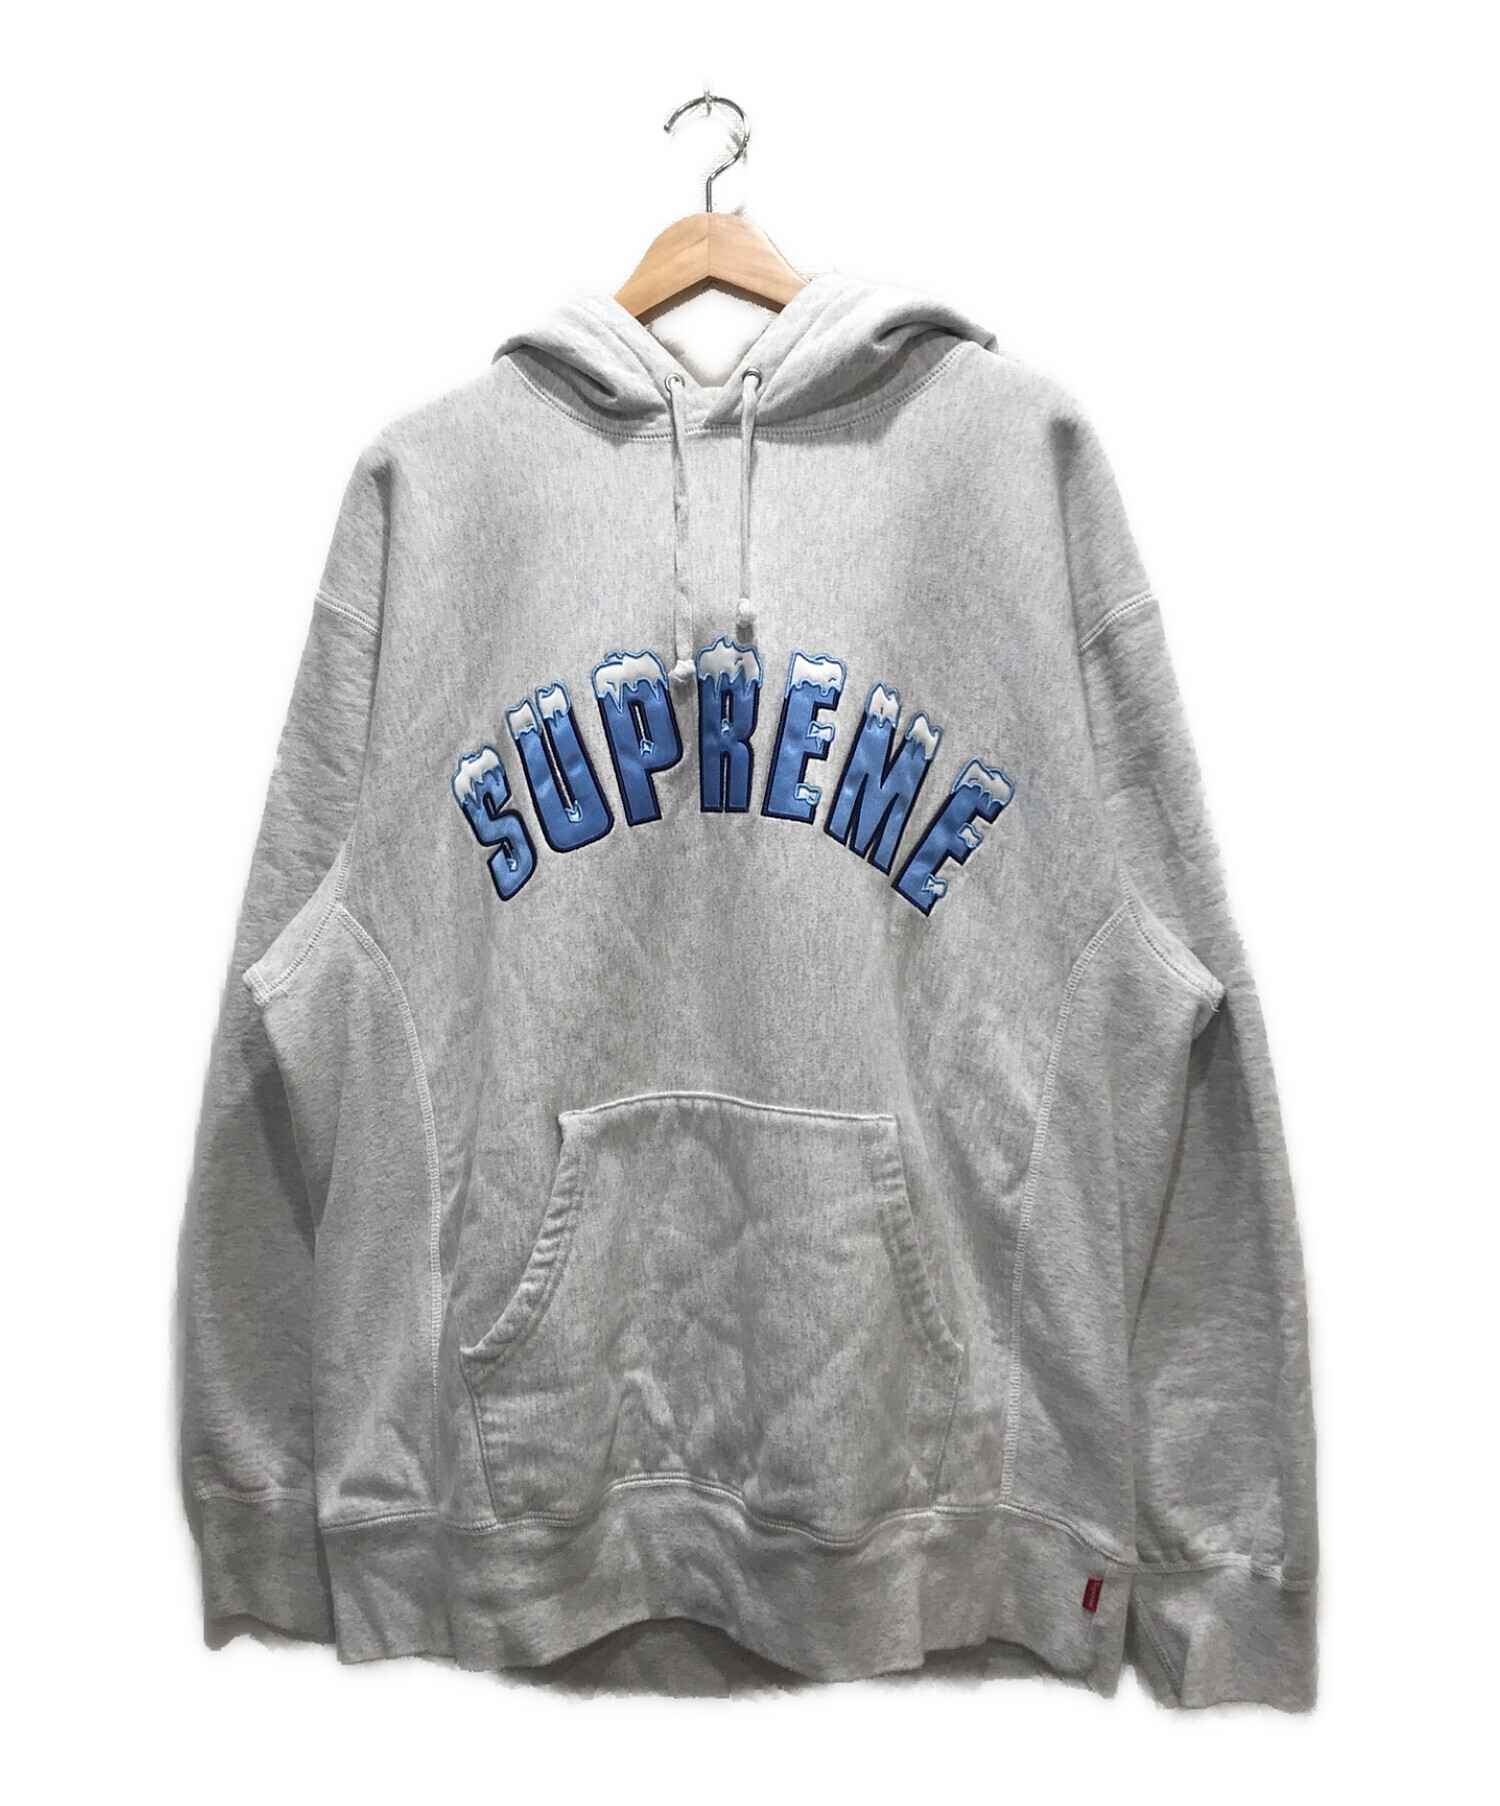 supreme Icy Arc Hooded Sweatshirt